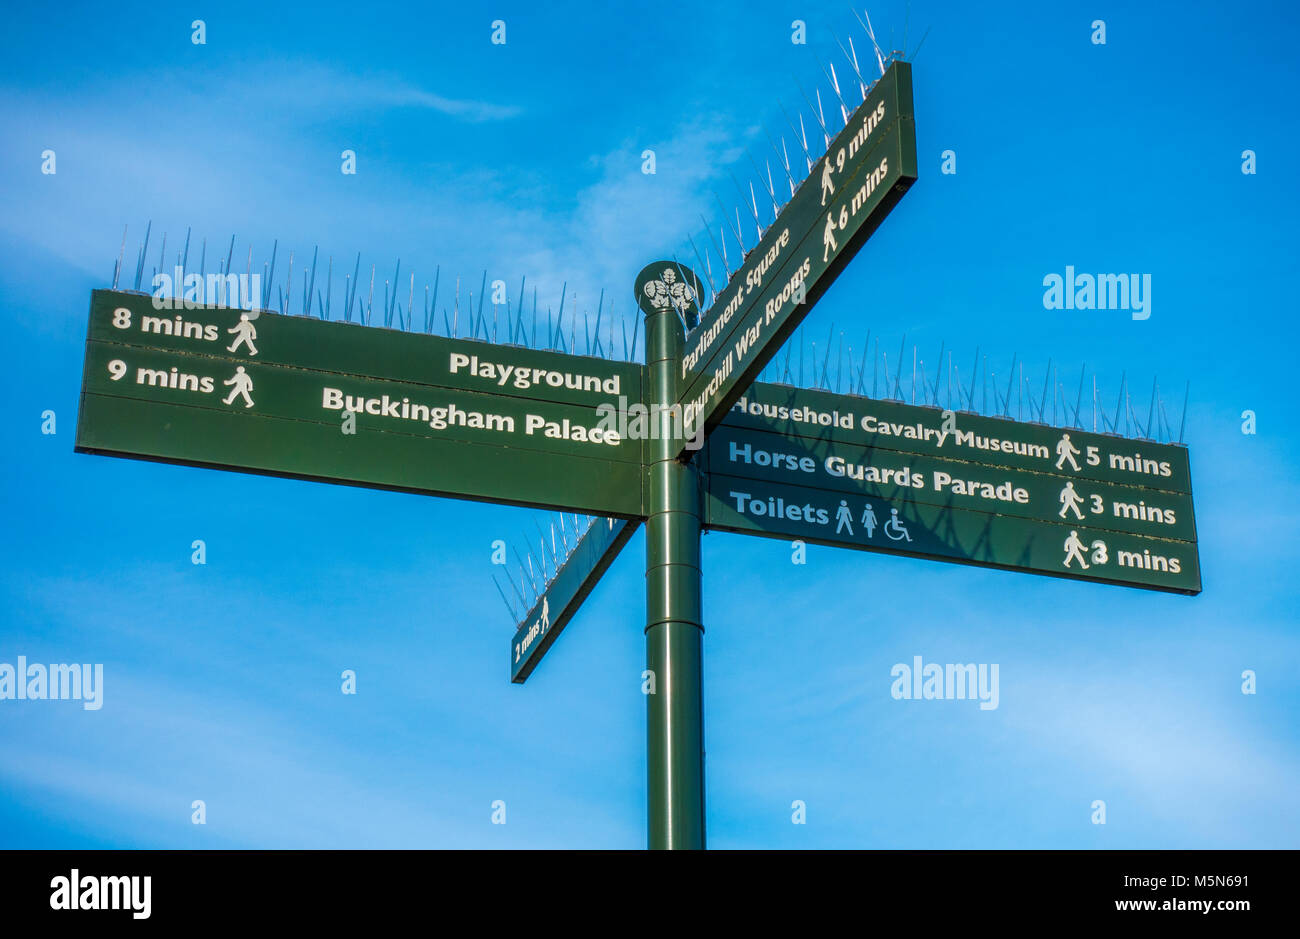 Cartello verde contro un cielo blu, a St James Park, che mostra i luoghi locali e il tempo che impiega a raggiungerlo a piedi. Central London SW1A, Inghilterra, Regno Unito. Foto Stock